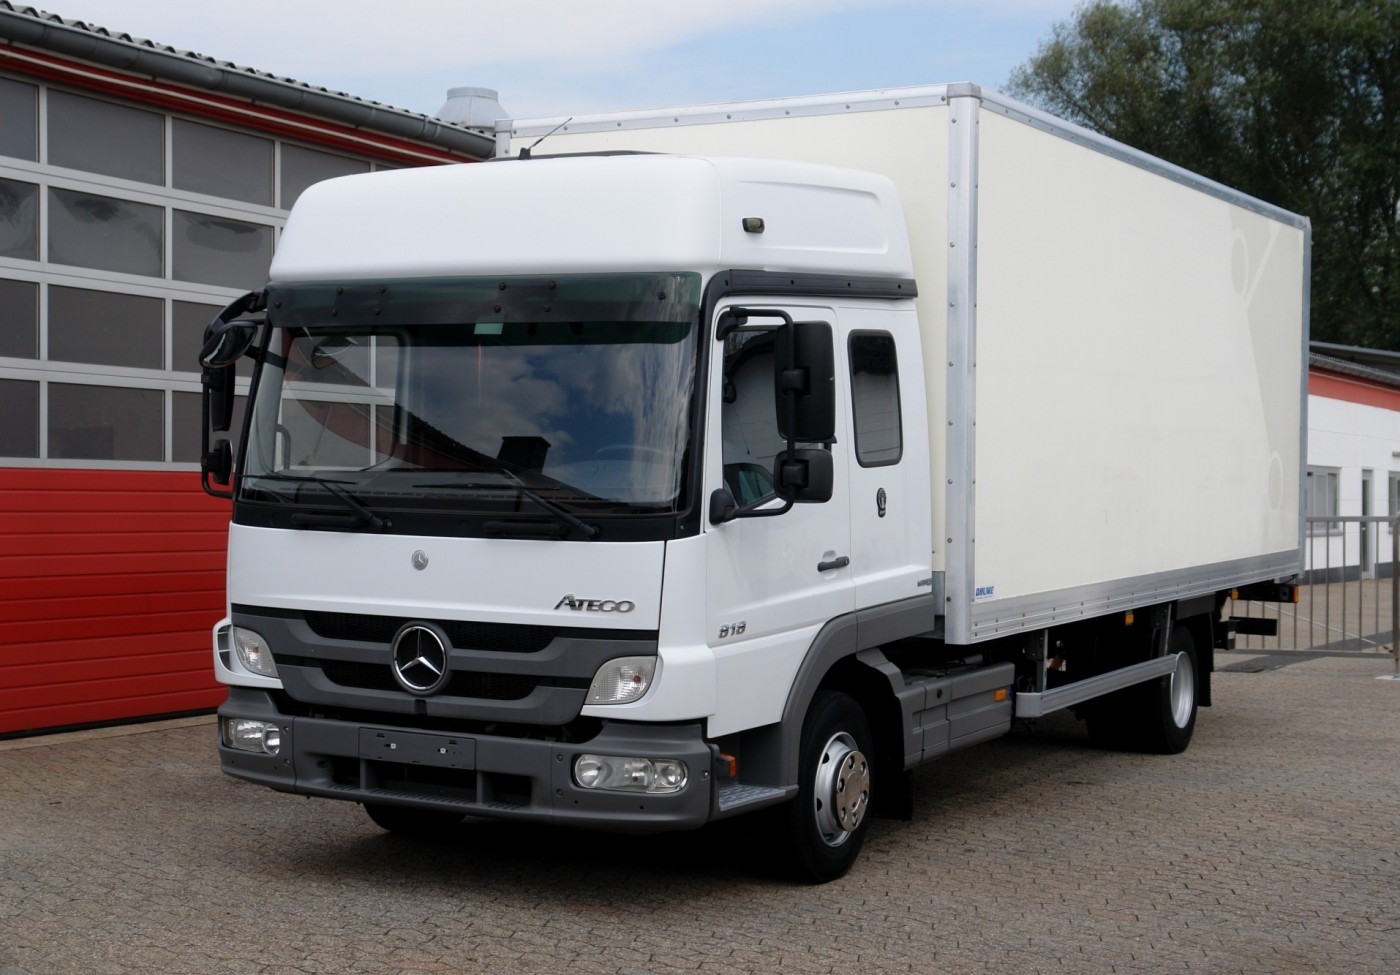 Mercedes-Benz - Atego 818 RL Camion furgone 6,20m Cambio manuale, sospensioni pneumatiche, cabina Bigspace L, Sponda idraulica 1500kg EURO5